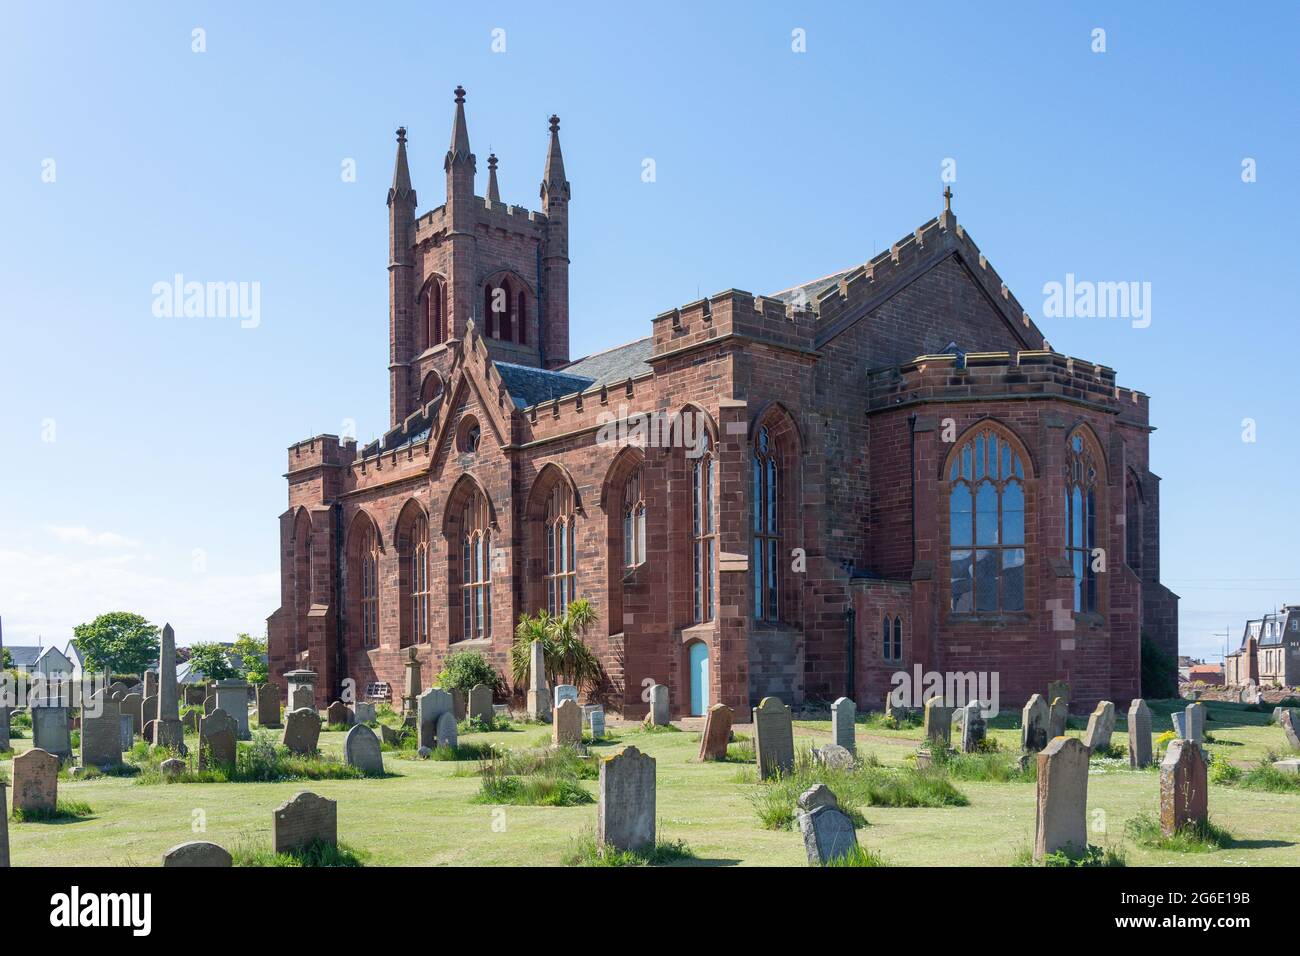 Eglise d'Ecosse, Queen's Road, Dunbar, East Lothian, Ecosse, Royaume-Uni Banque D'Images